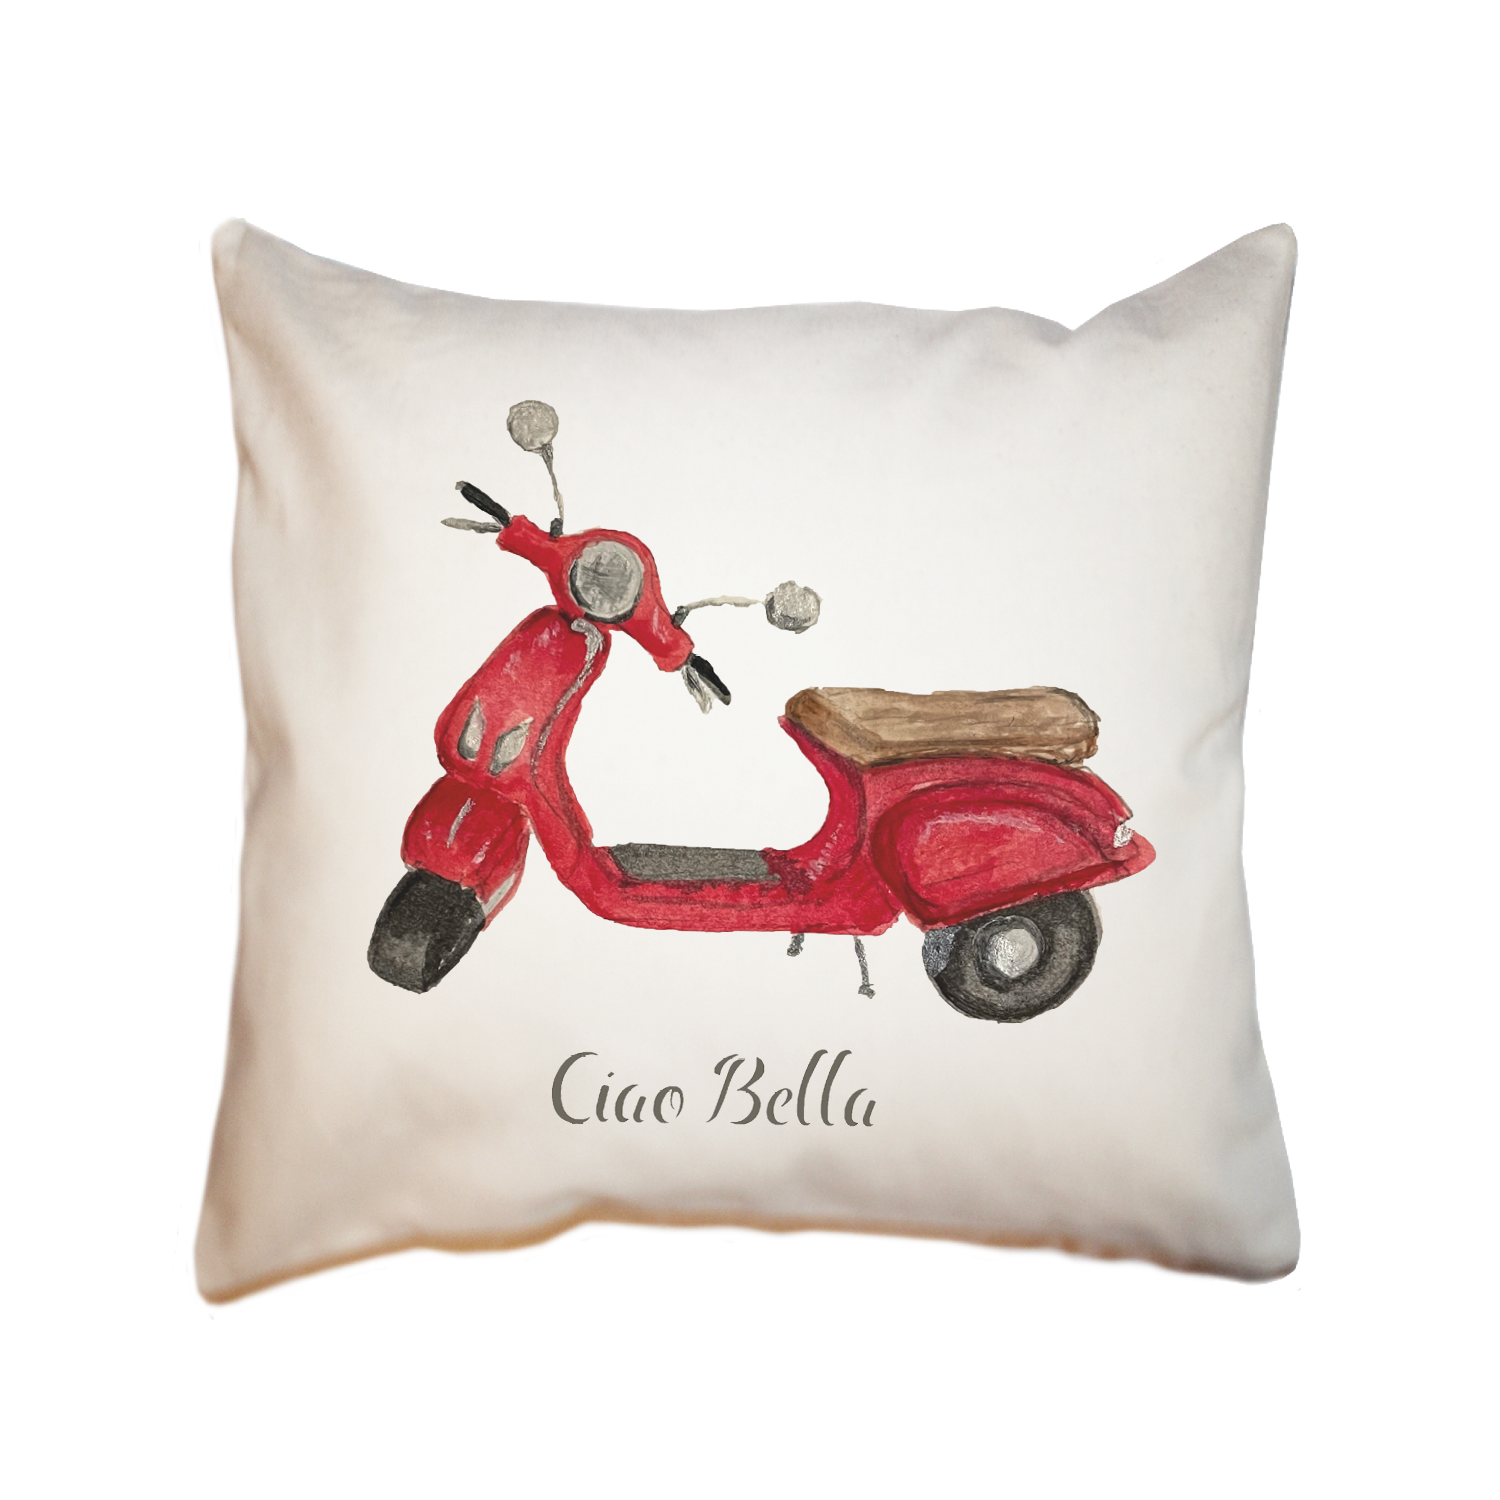 ciao bella square pillow